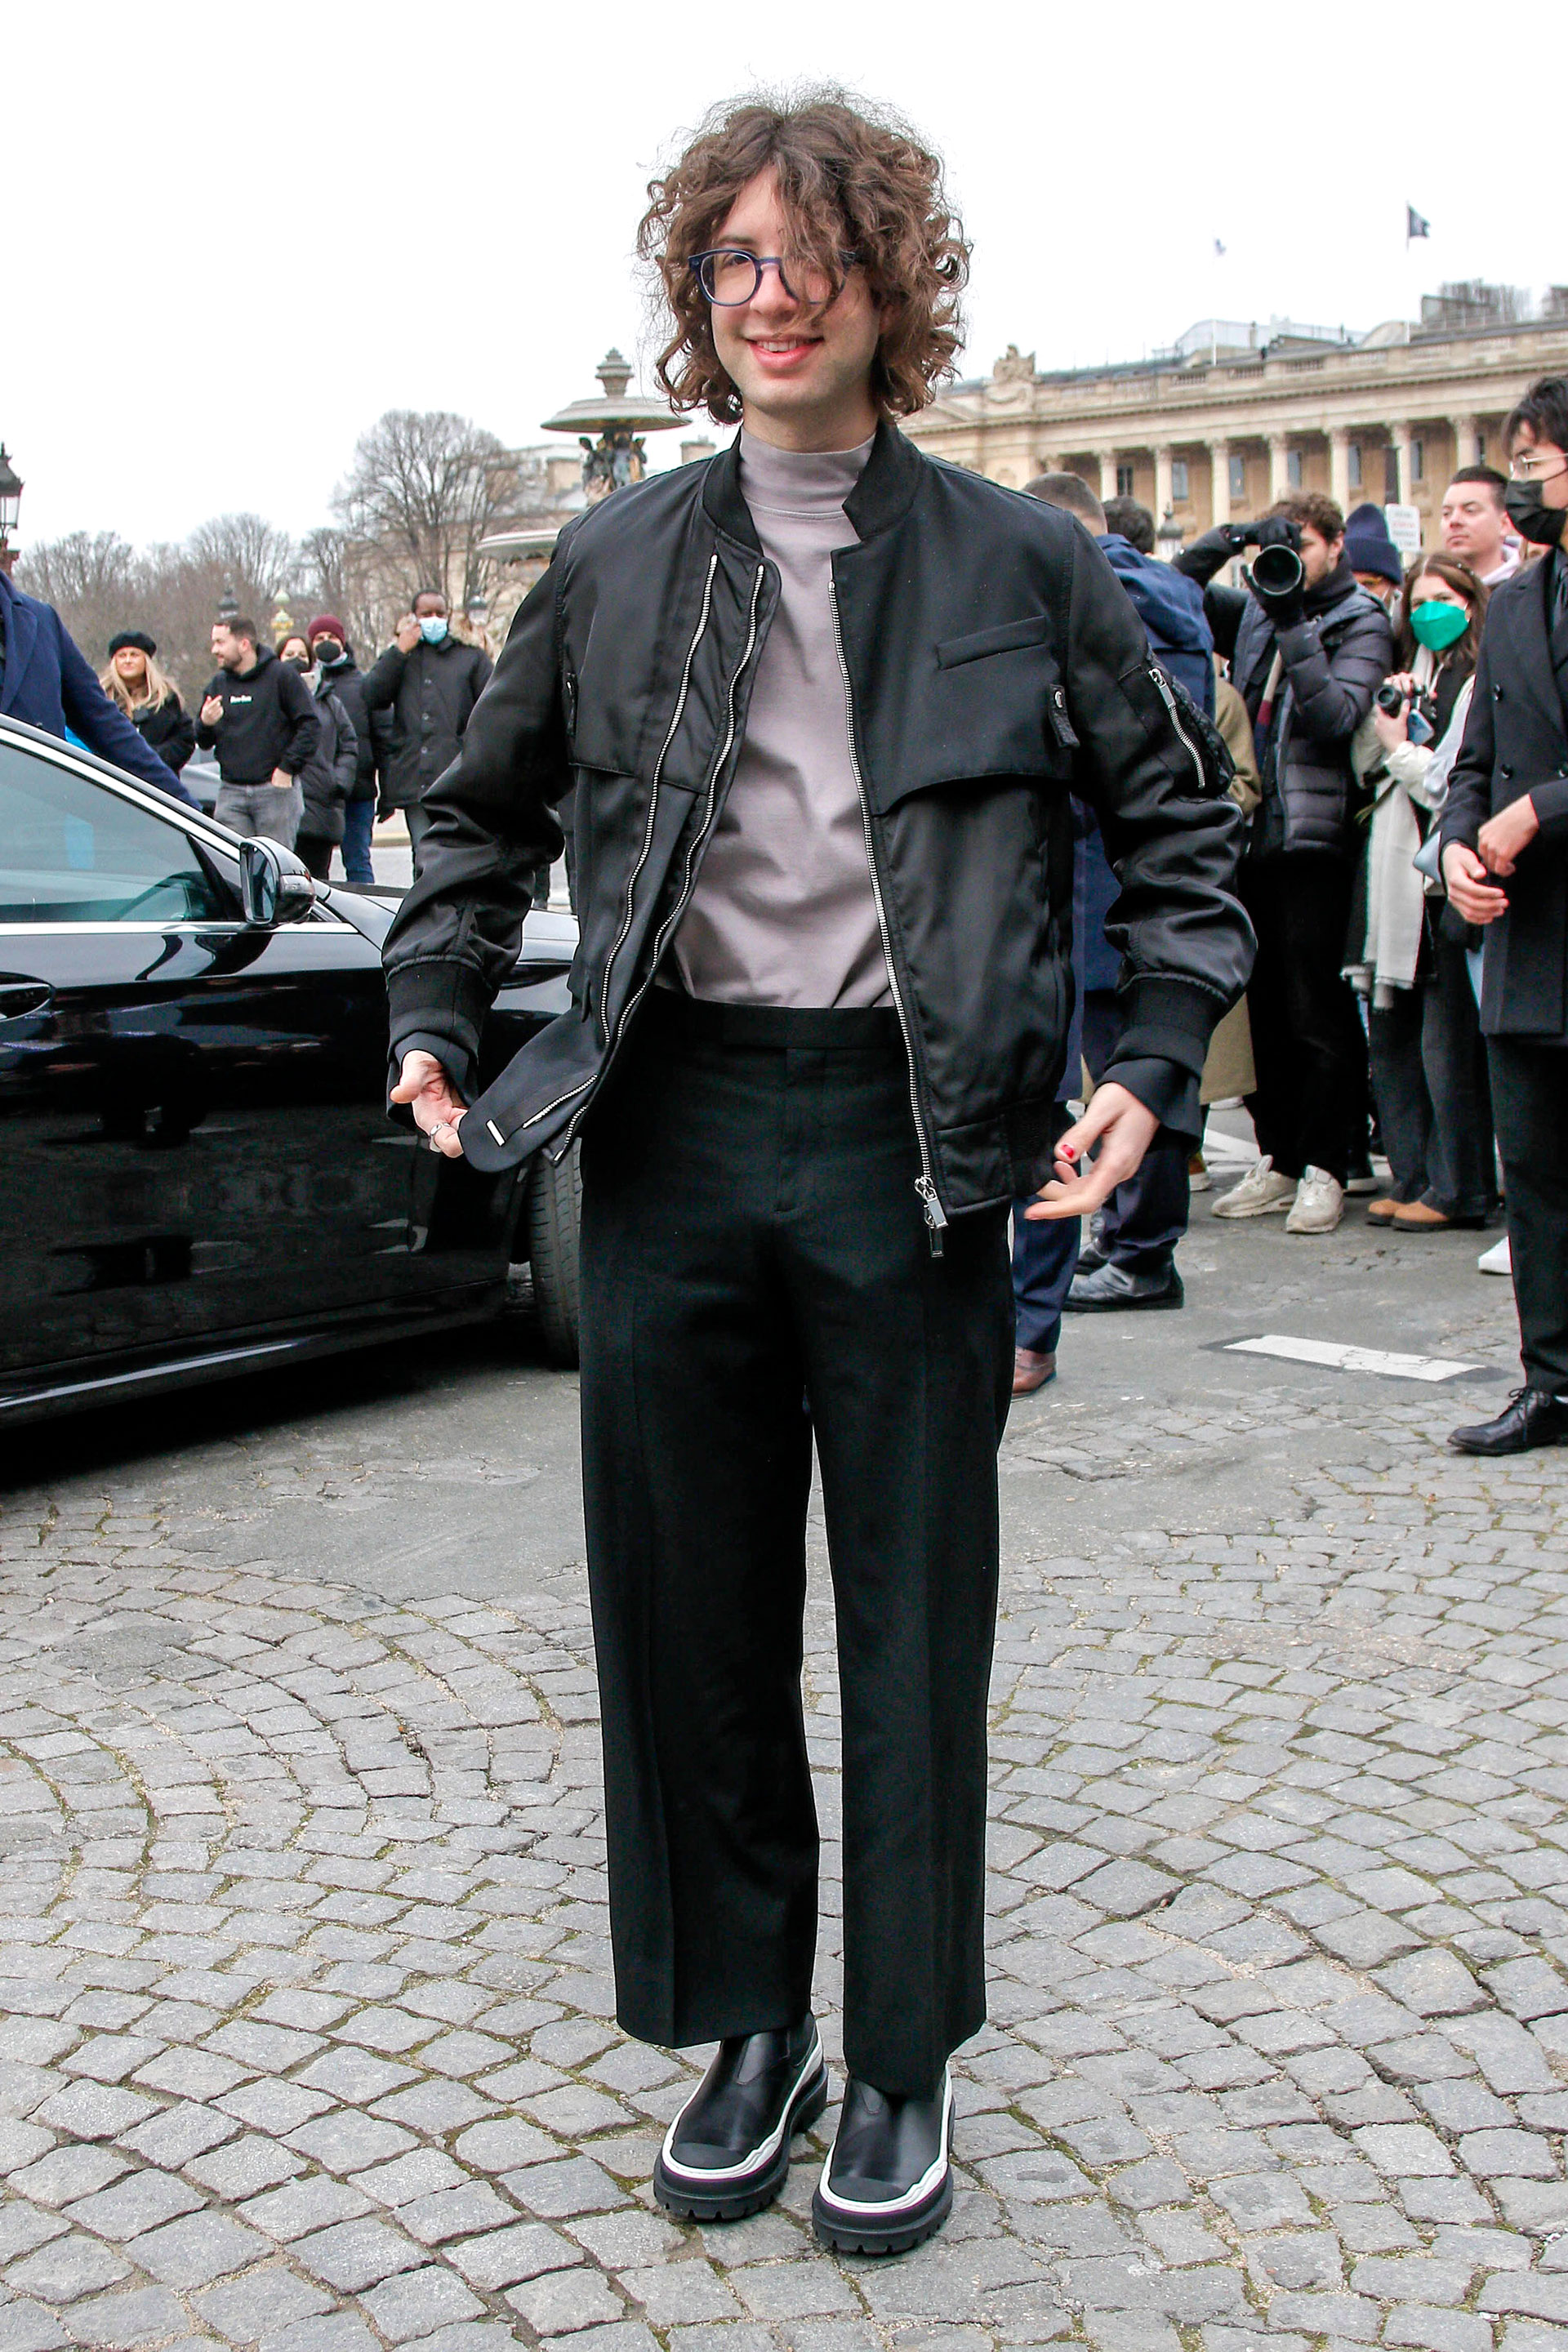 Lucas, el hijo de Mick Jagger, asistió a un exclusivo desfile de moda en París, Francia. Lució un pantalón negro que combinó con su campera estilo bomber y una polera gris